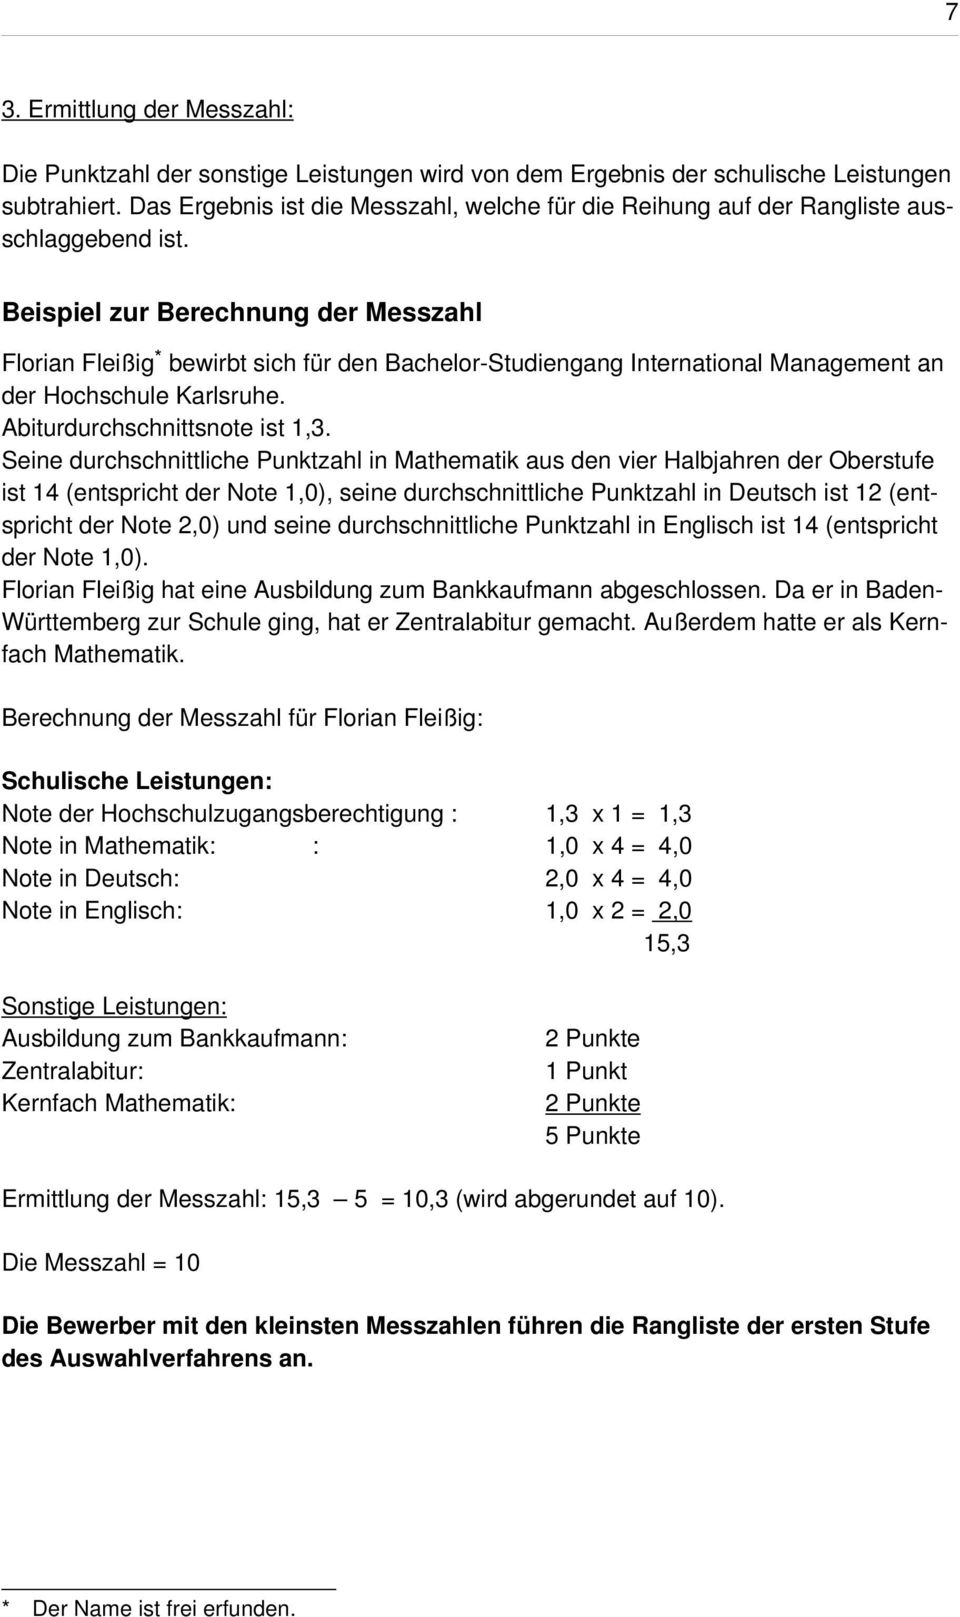 Beispiel zur Berechnung der Messzahl Florian Fleißig * bewirbt sich für den Bachelor-Studiengang International Management an der Hochschule Karlsruhe. Abiturdurchschnittsnote ist 1,3.